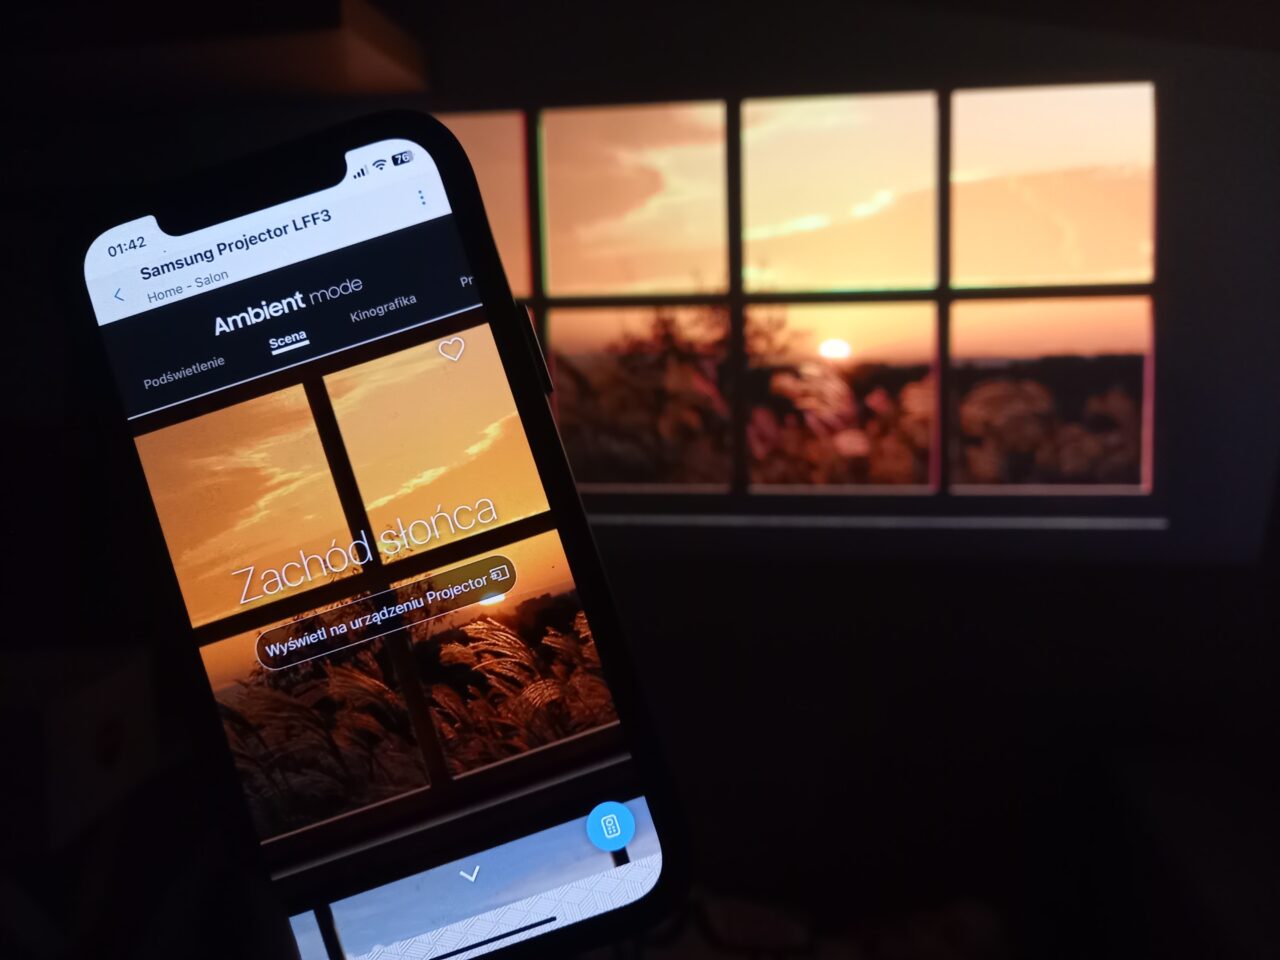 Smartfon wyświetlający obraz zachodu słońca z napisem "Zachód słońca", trzymany przed projekcyjnym ekranem z tym samym obrazem w tle.